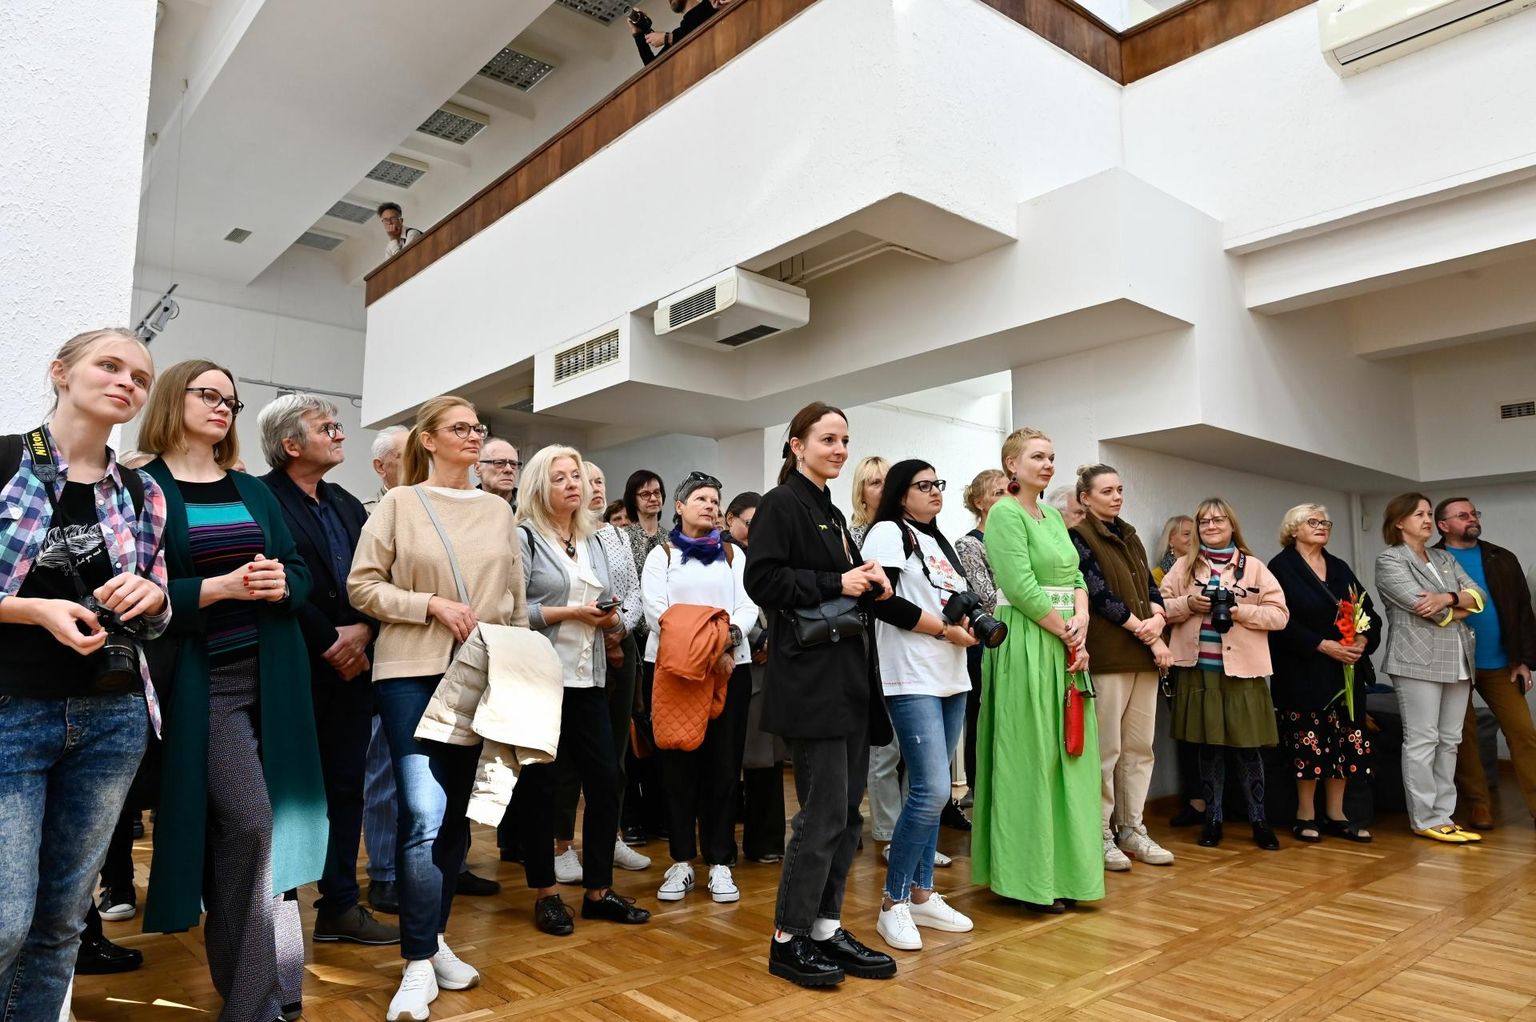 Šiauliai kunstigaleriis avati kolme Balti sõpruslinna – Pärnu, Jelgava ja Šiauliai – kunstnike ühisnäitus.